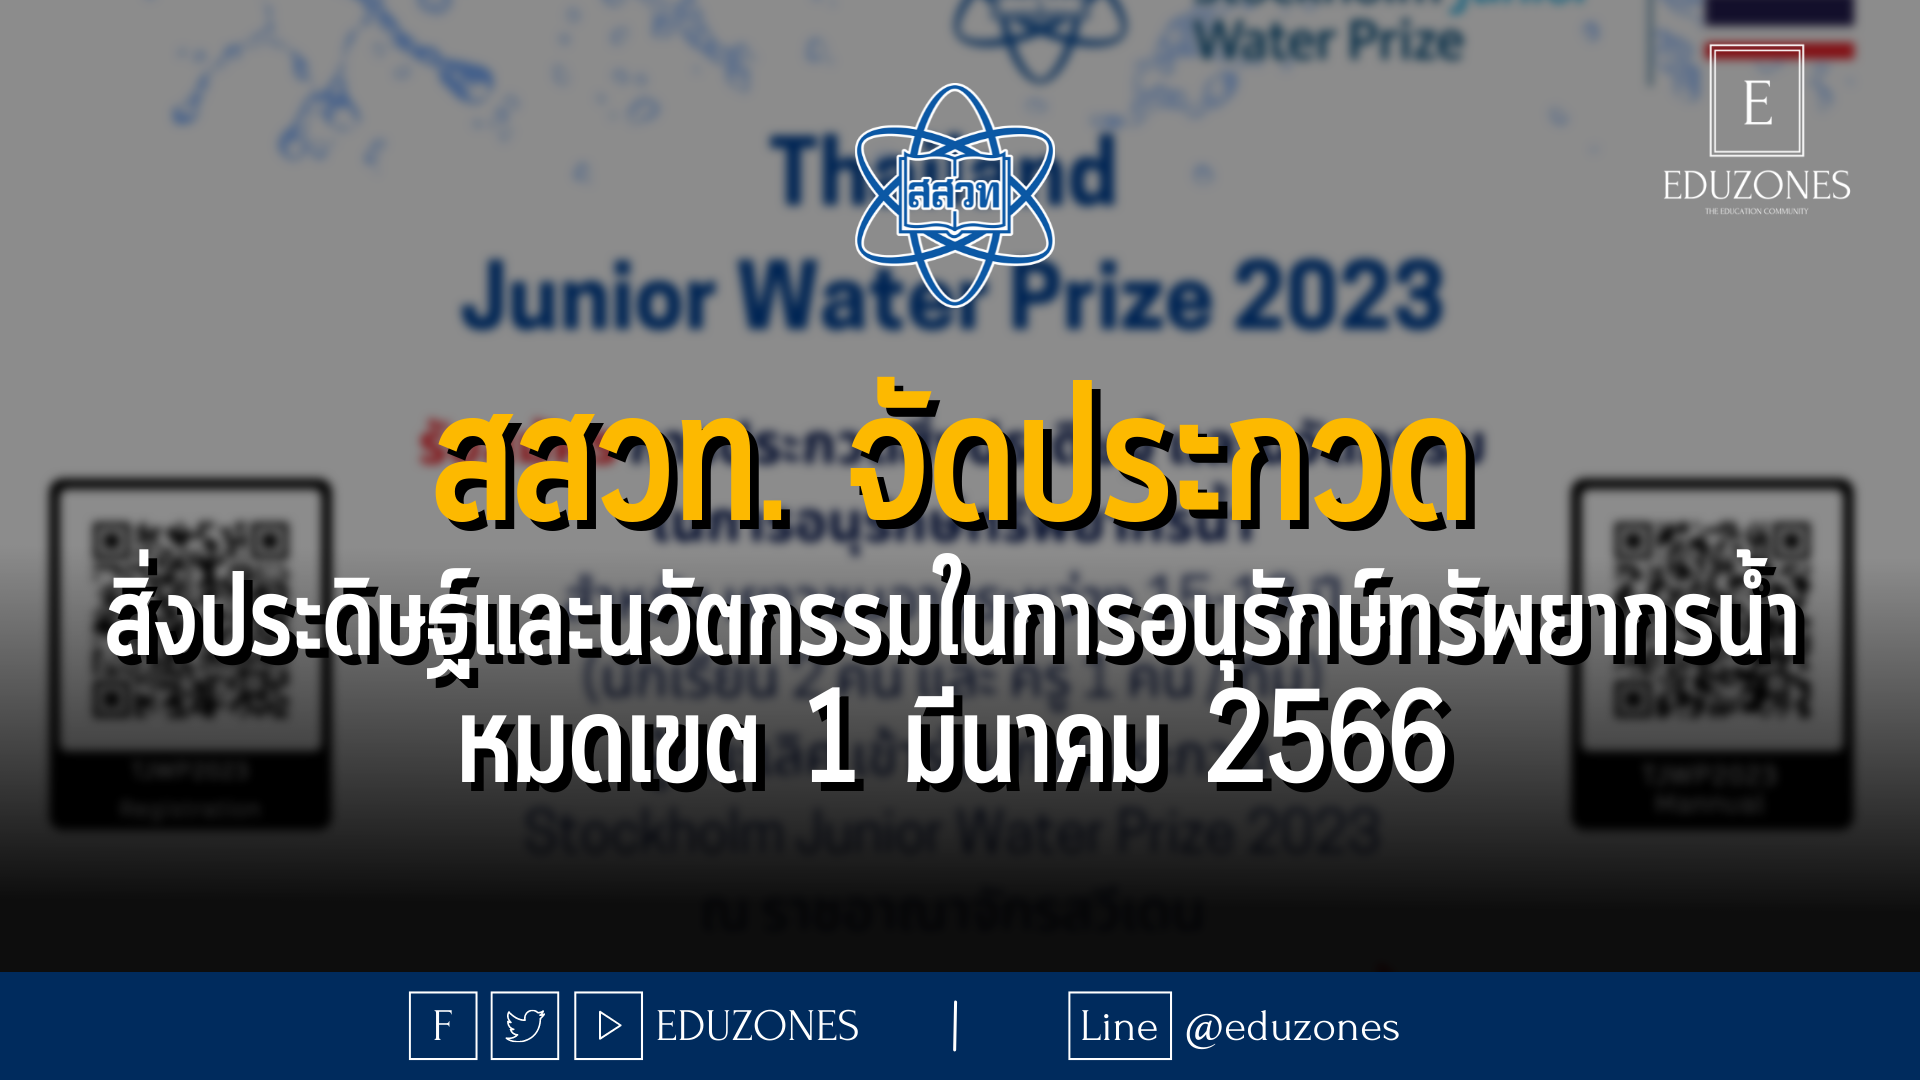 สสวท. รับสมัครเยาวชนเข้าร่วม การประกวดสิ่งประดิษฐ์และนวัตกรรมในการอนุรักษ์ทรัพยากรน้ำ ปี 2566 (Thailand Junior Water Prize 2023) - หมดเขต 1 มีนาคม 2566